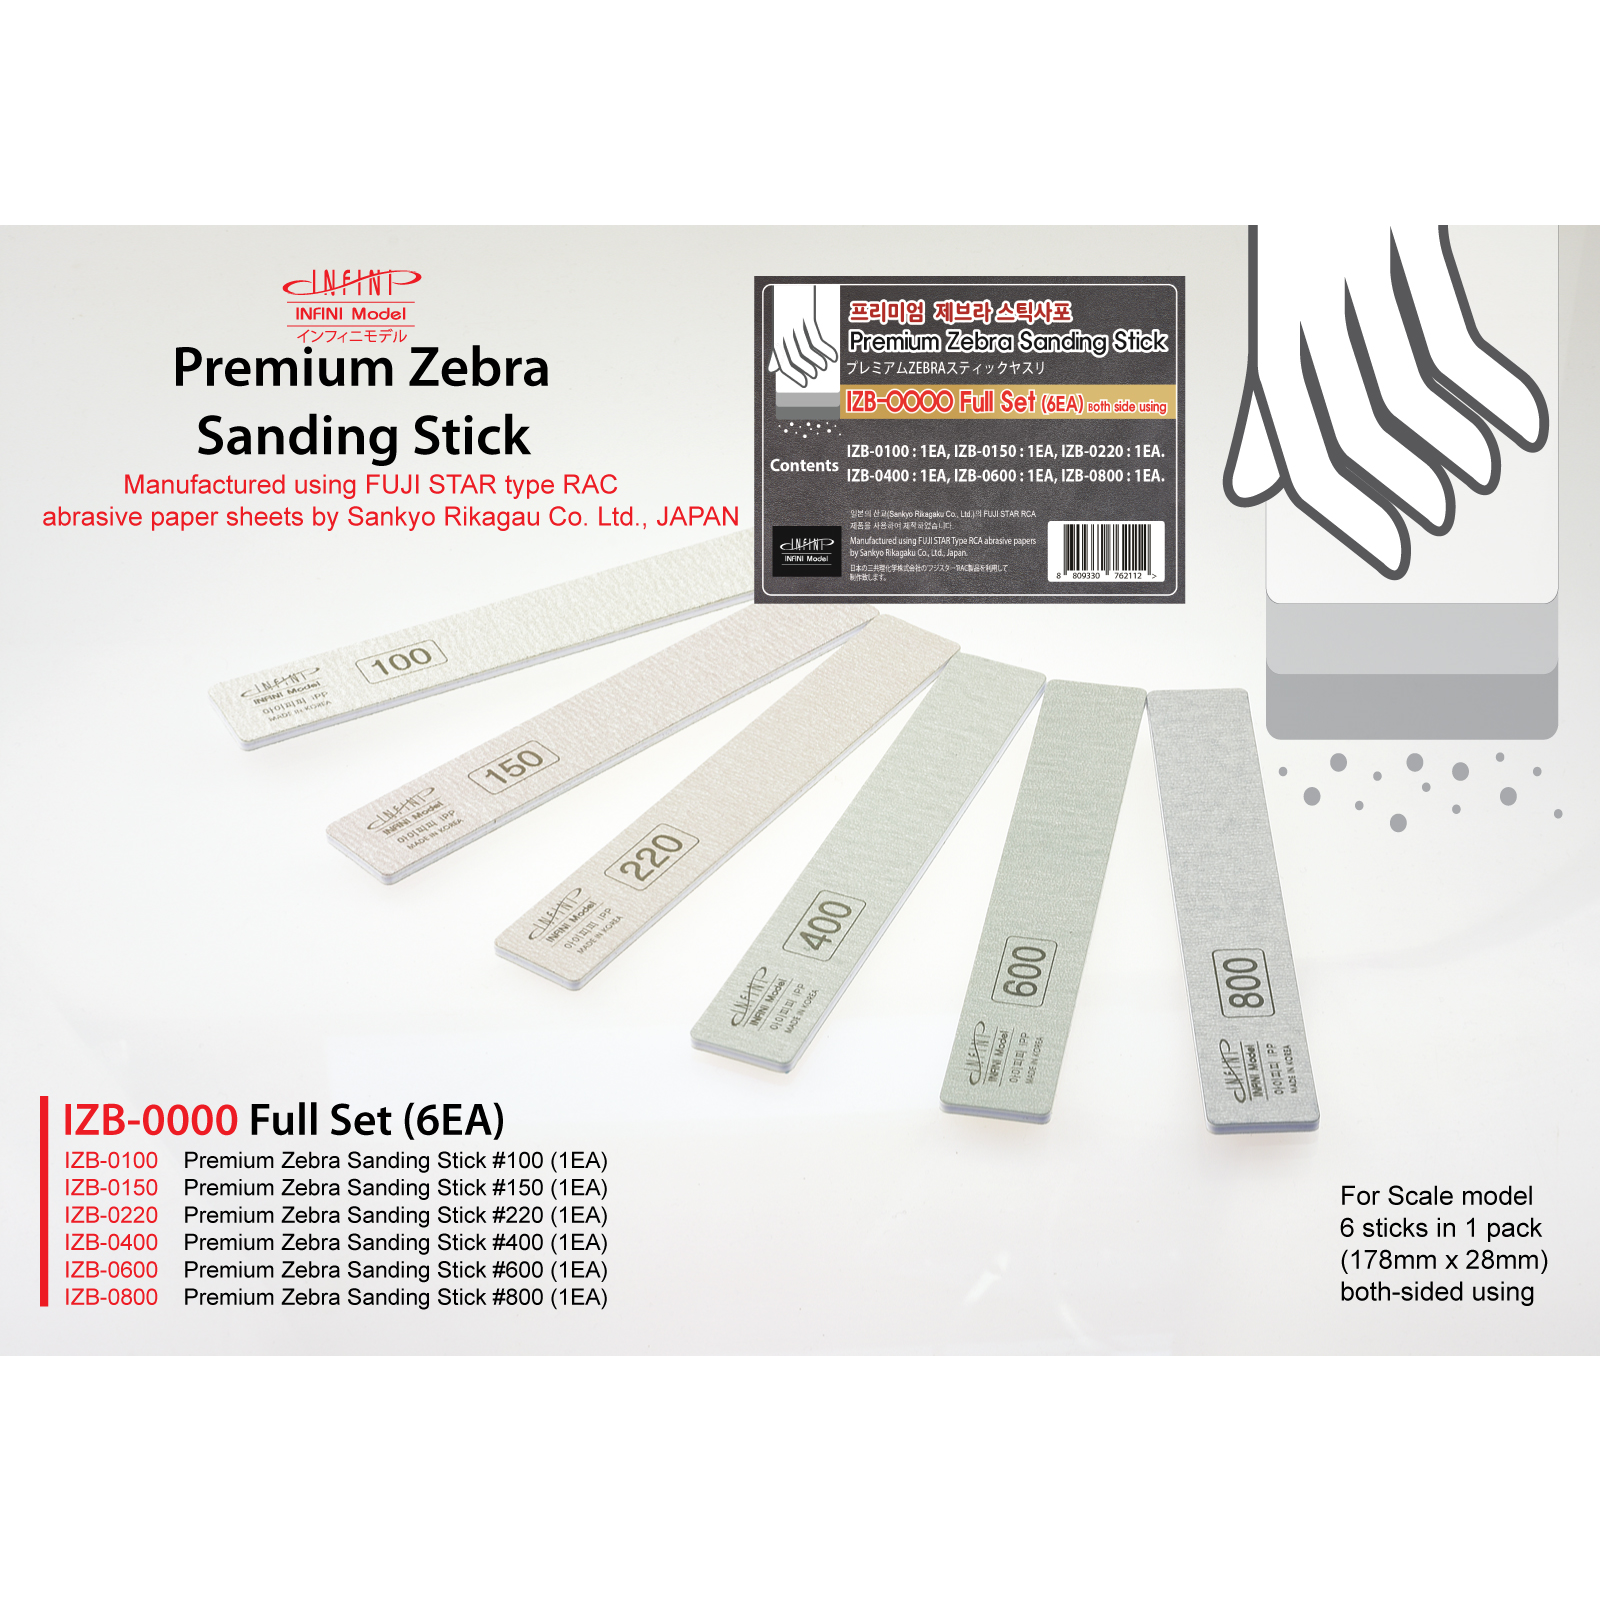 2 EA Infini BJD OOAK Premium Zebre Sanding Stick Set IZB-0800 